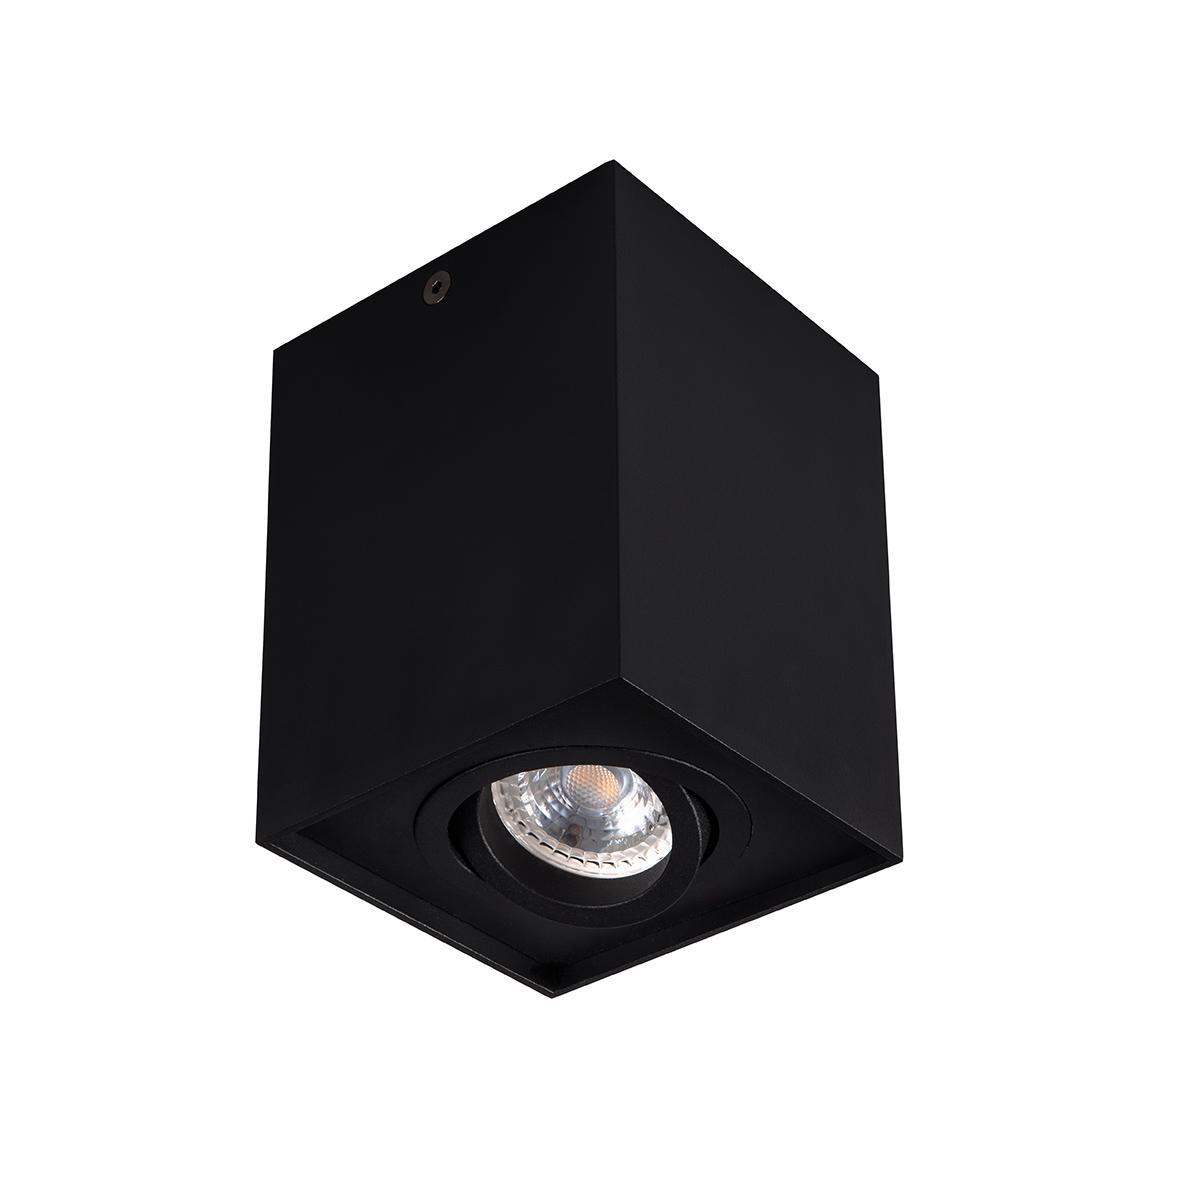 Накладной точечный светильник Kanlux GORD DLP 50-B 25471 накладной точечный светильник kanlux gord dlp 50 w 25470